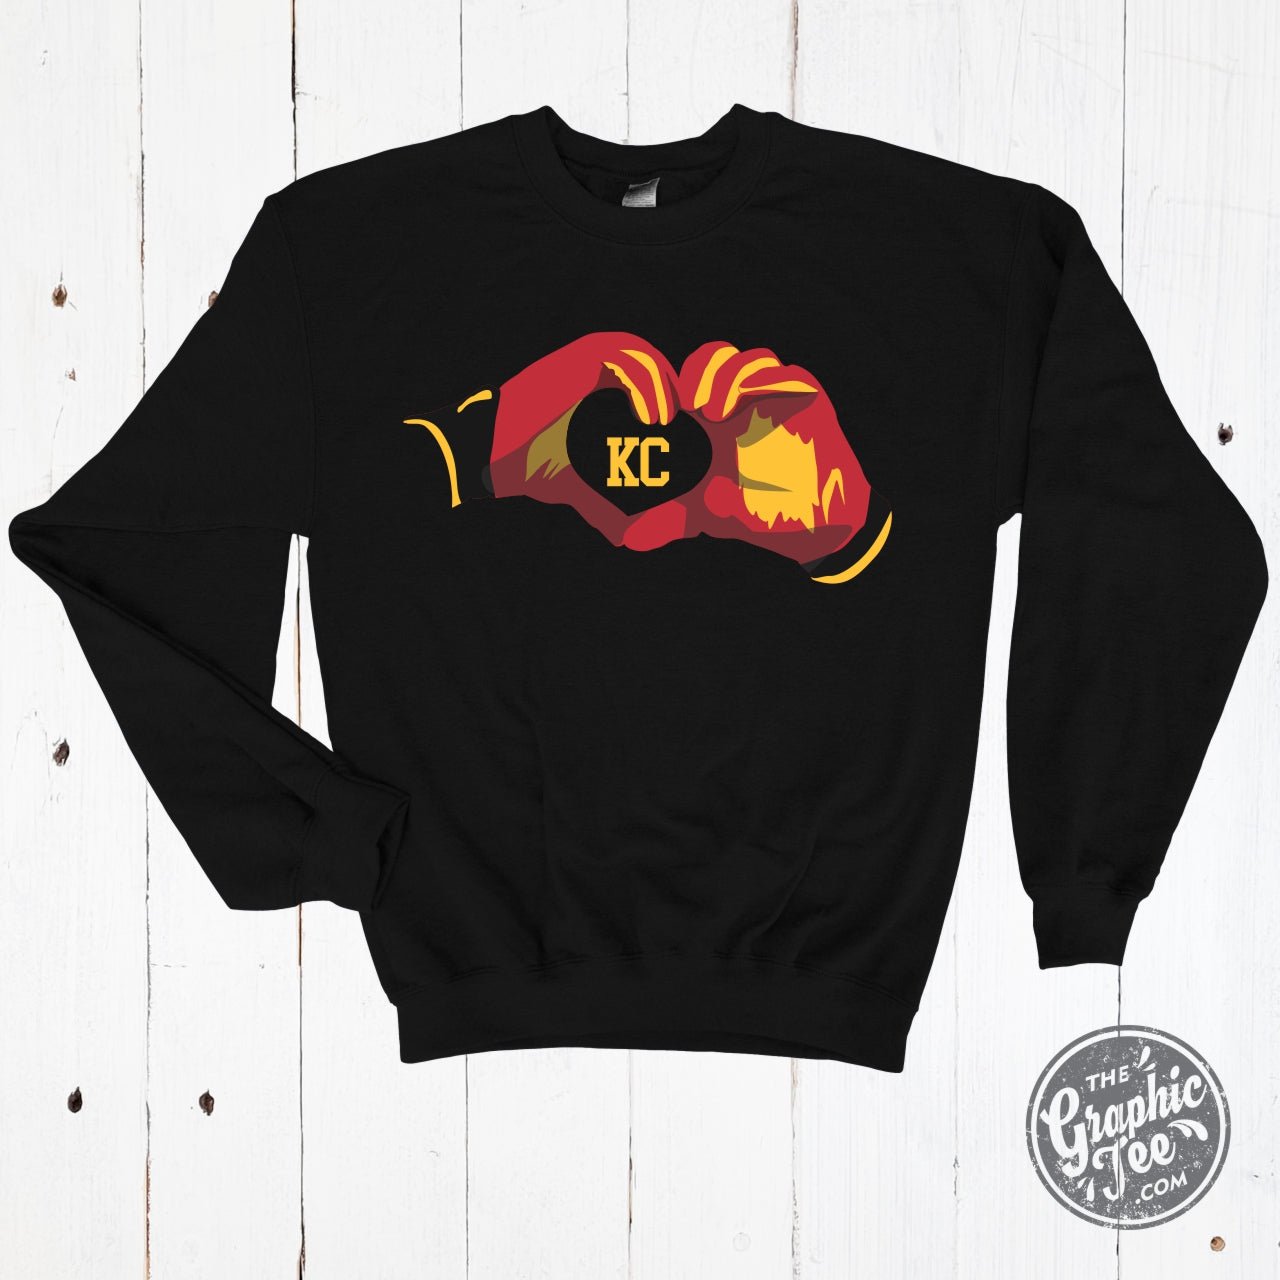 KC Heart Hands Crewneck Sweatshirt - The Graphic Tee